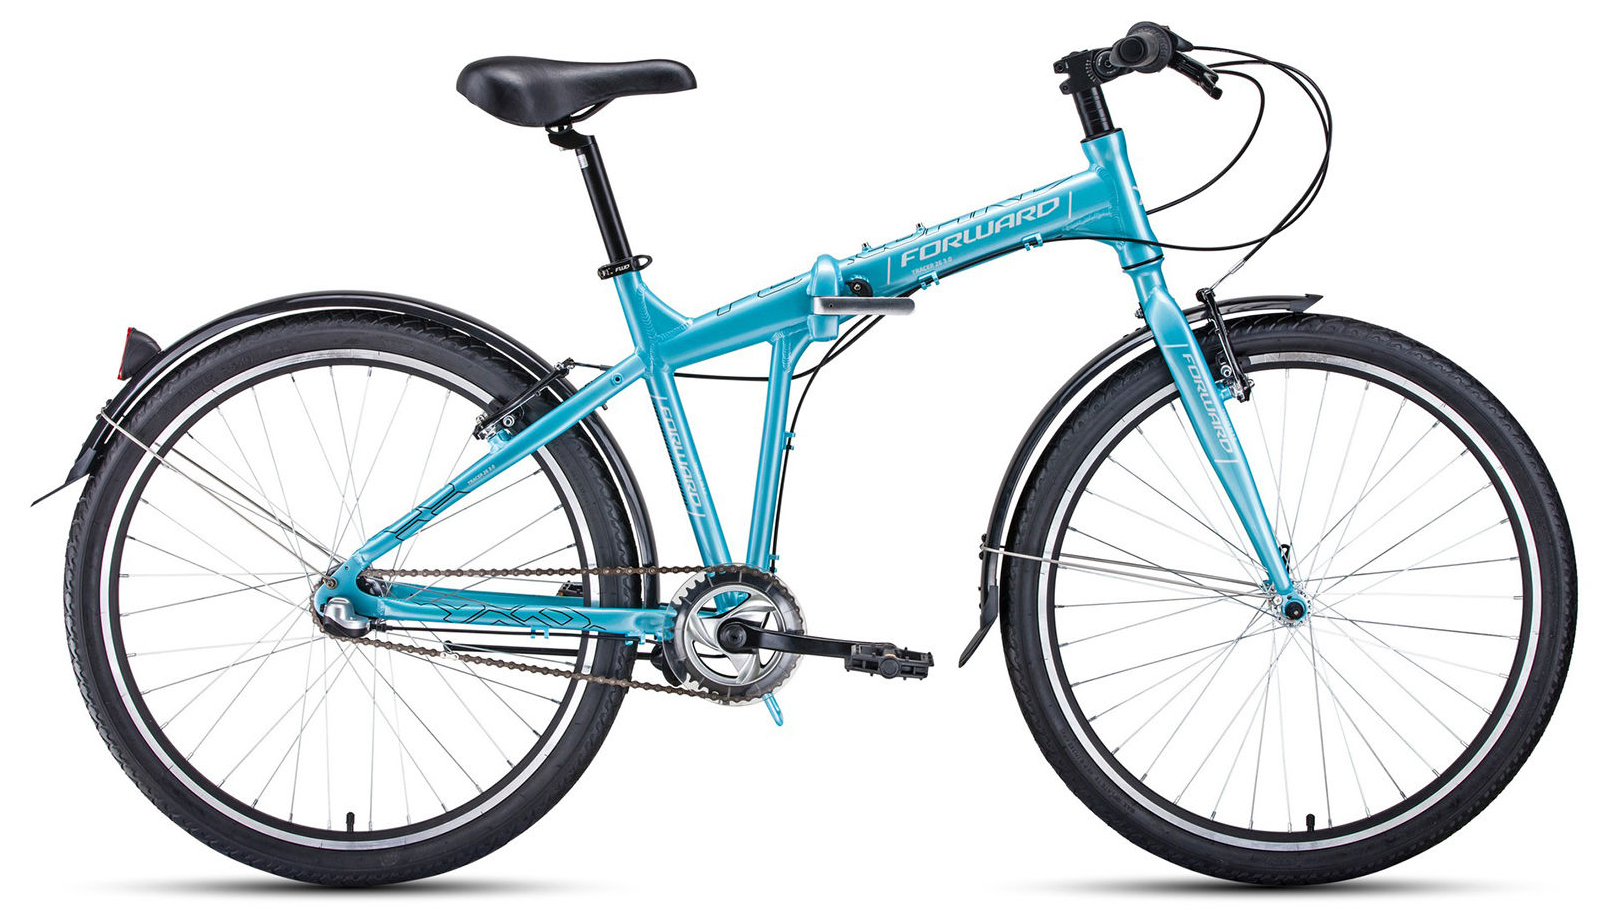  Отзывы о Складном велосипеде Forward Tracer 26 3.0 2020